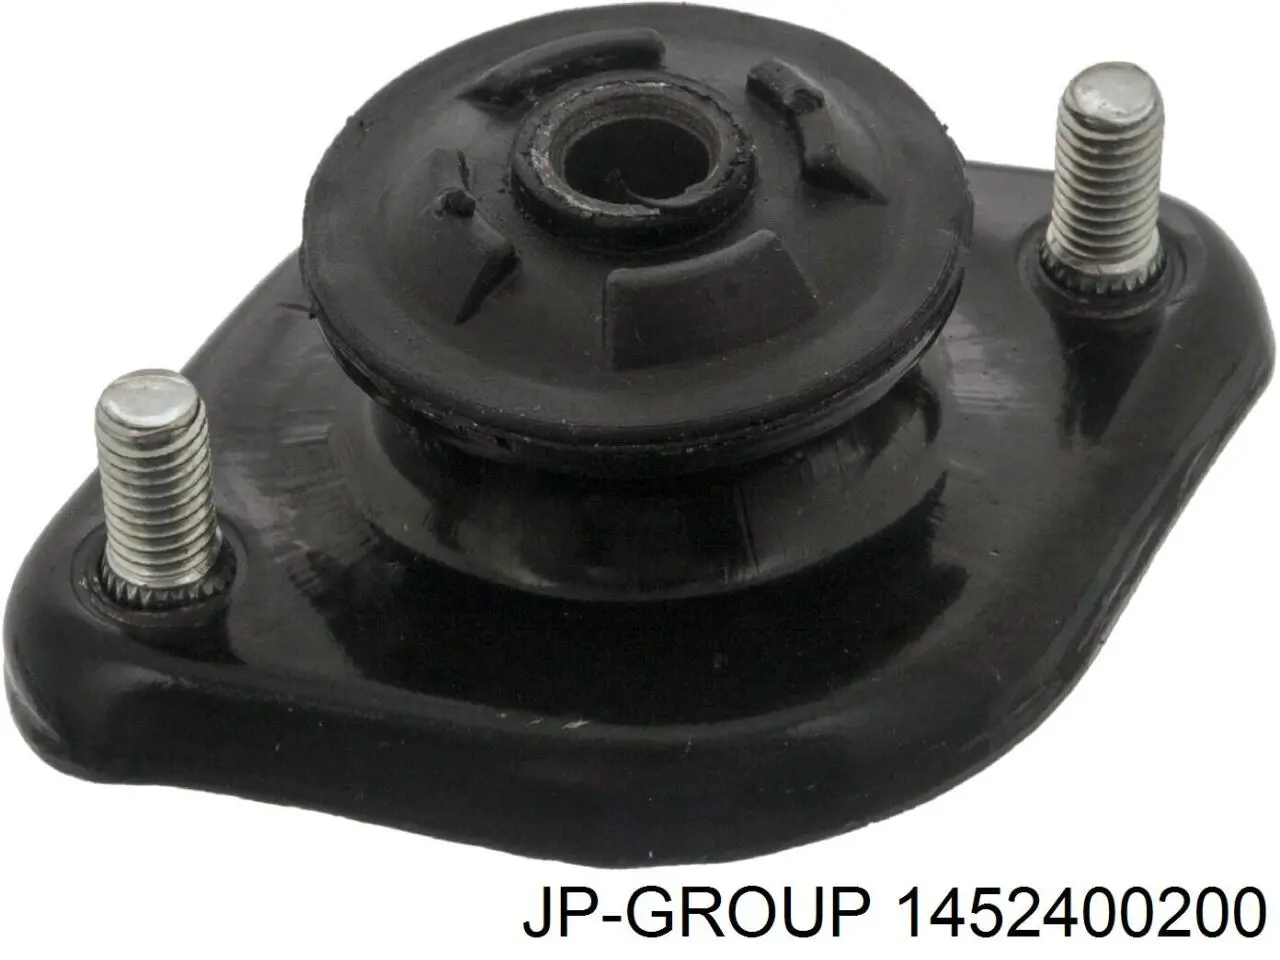 1452400200 JP Group copela de amortiguador trasero